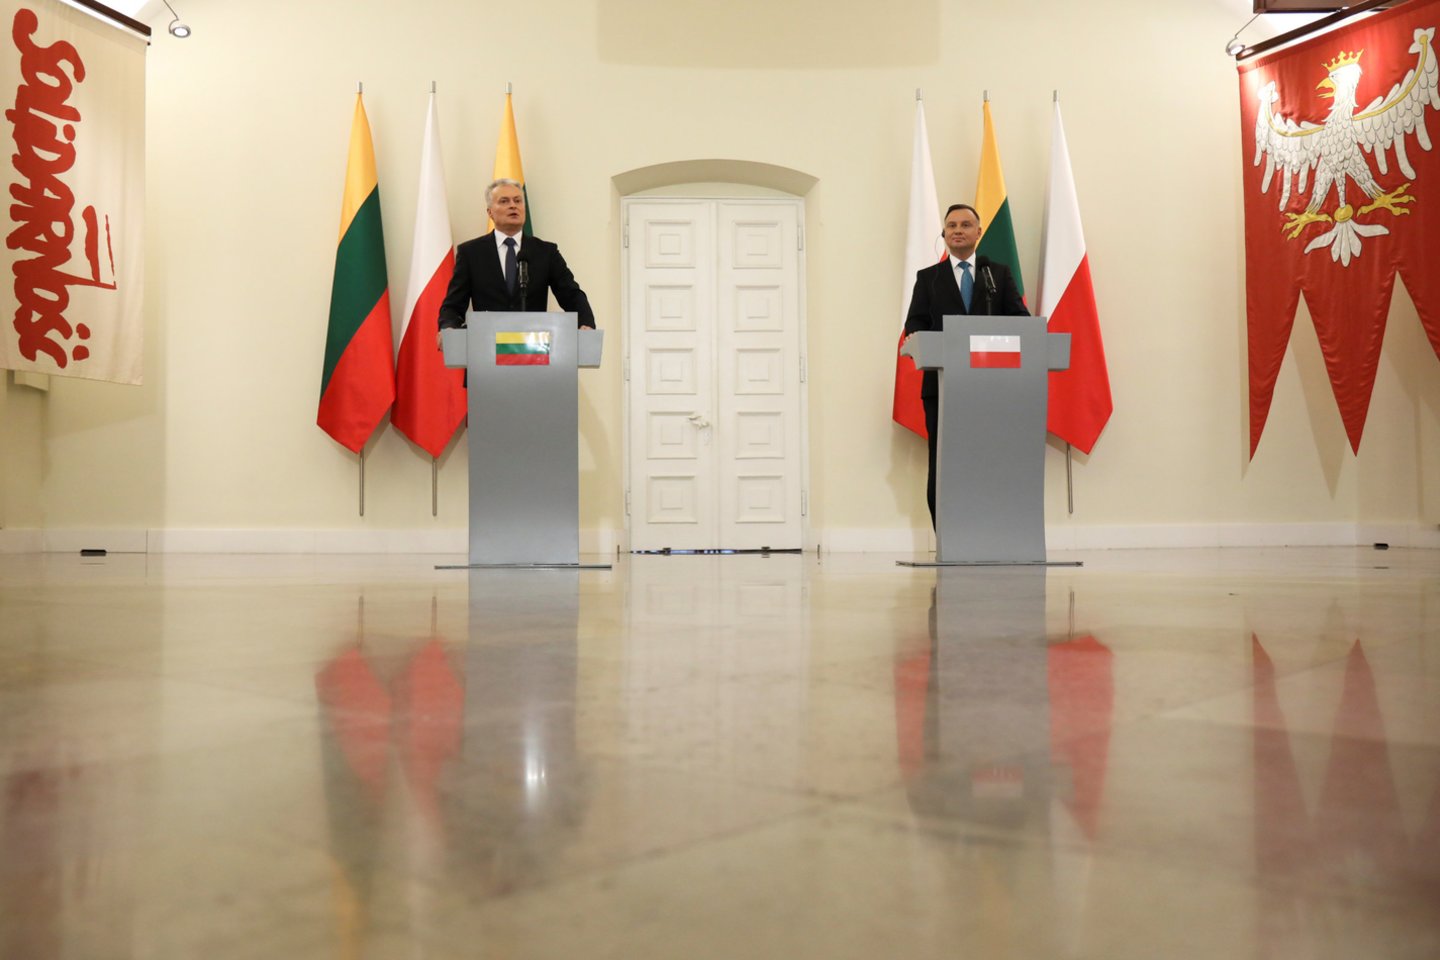 Santykiai tarp Lietuvos ir Lenkijos nors ir vangokai, bet vis dėlto gerėja.<br>Scanpix nuotr.